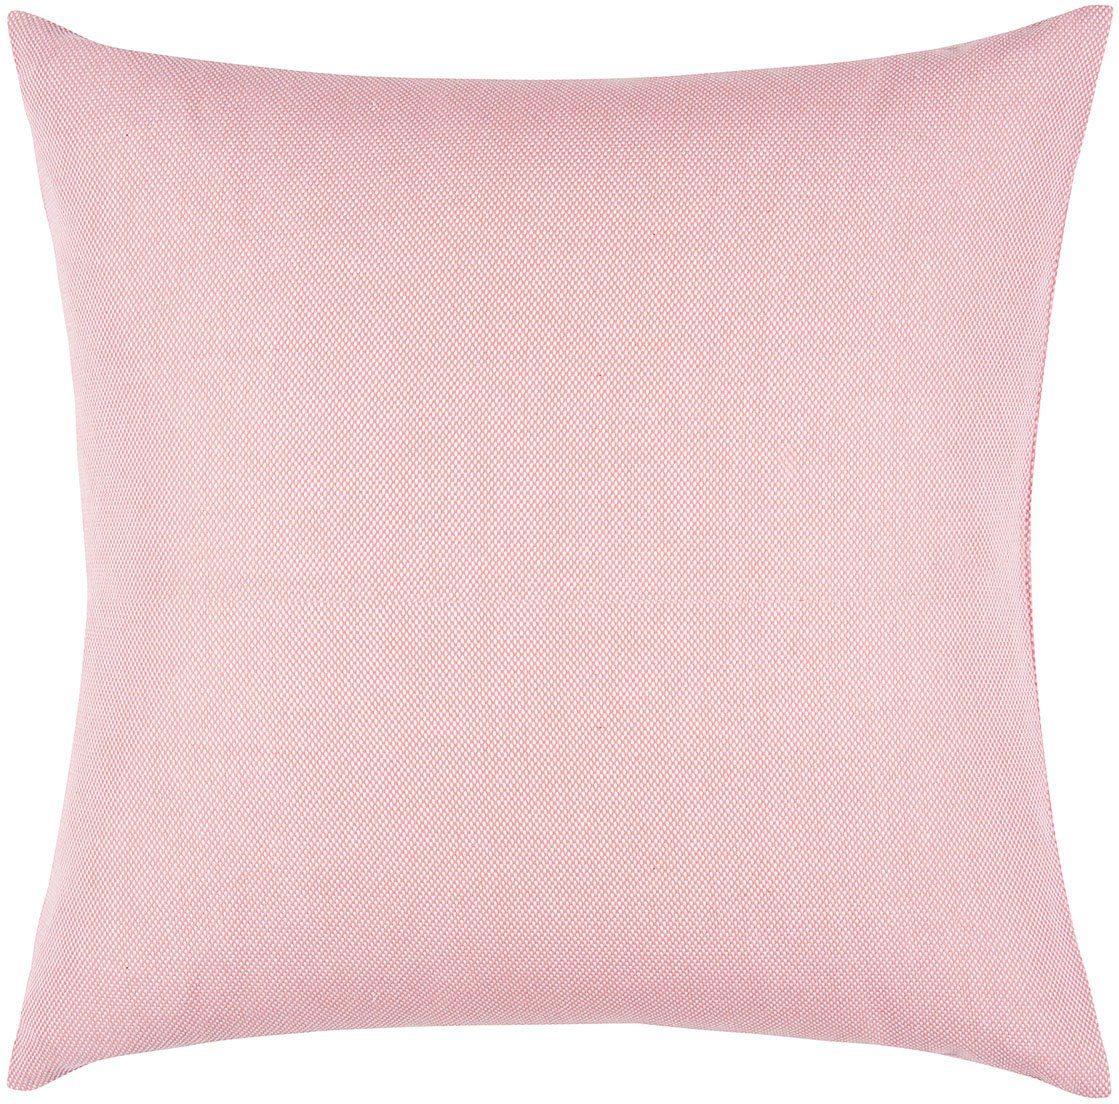 PAD Dekokissen Risotto, einzigartiges Design dusty pink